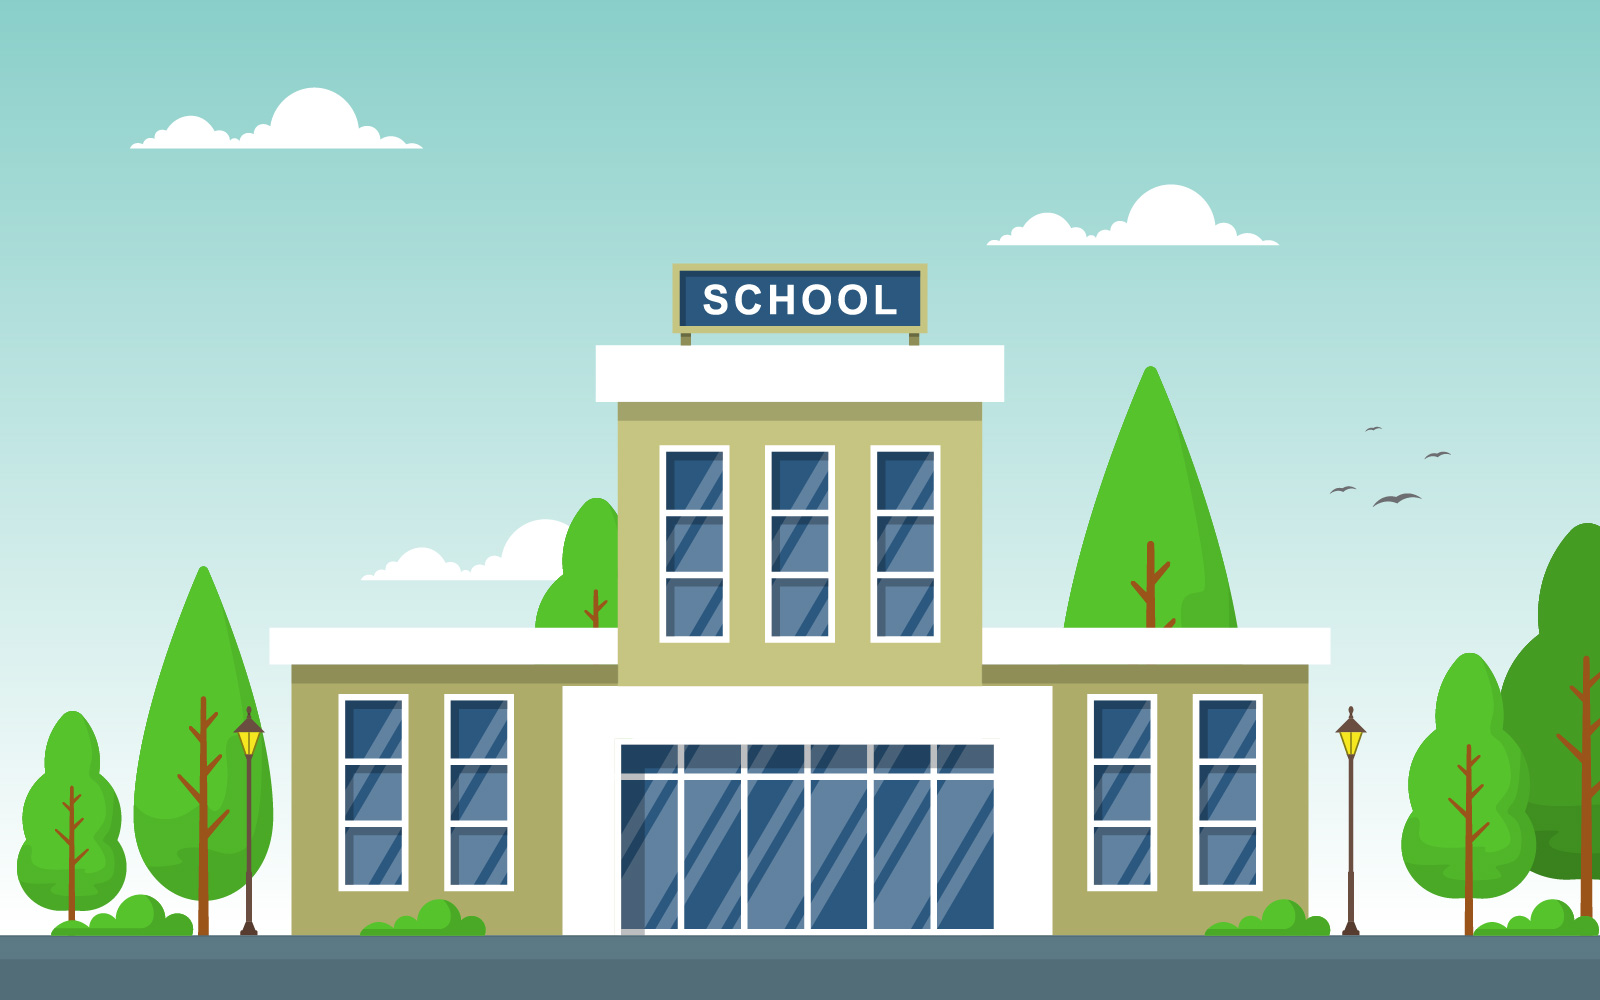 Street School Building - Illustration